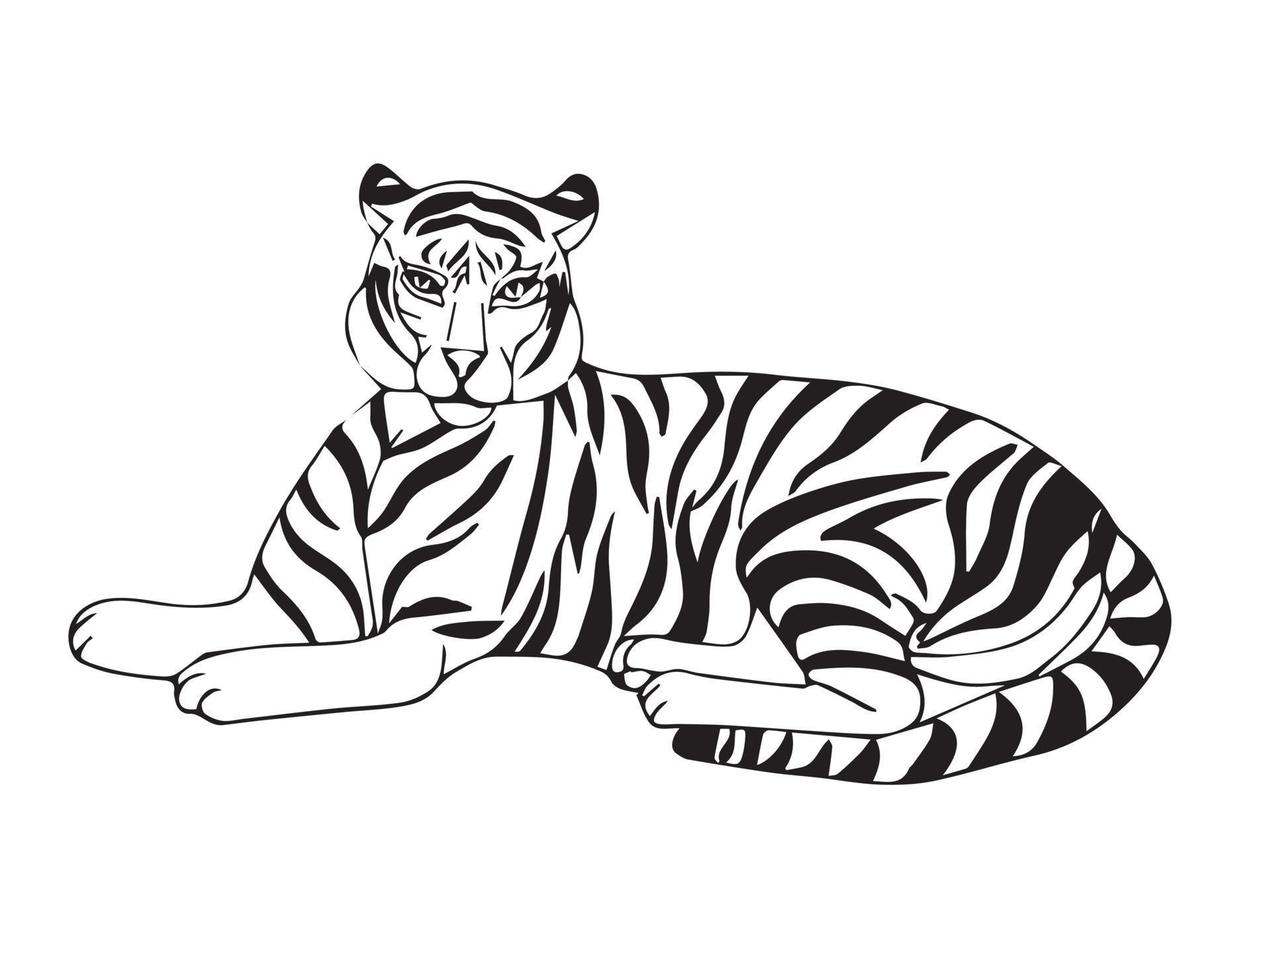 Liegender Tiger, der sich nach der Jagd ausruht. große wilde Tabbykatze. Dschungelbewohner. Vektor Stock Illustration im Doodle-Stil isoliert auf weißem Hintergrund.